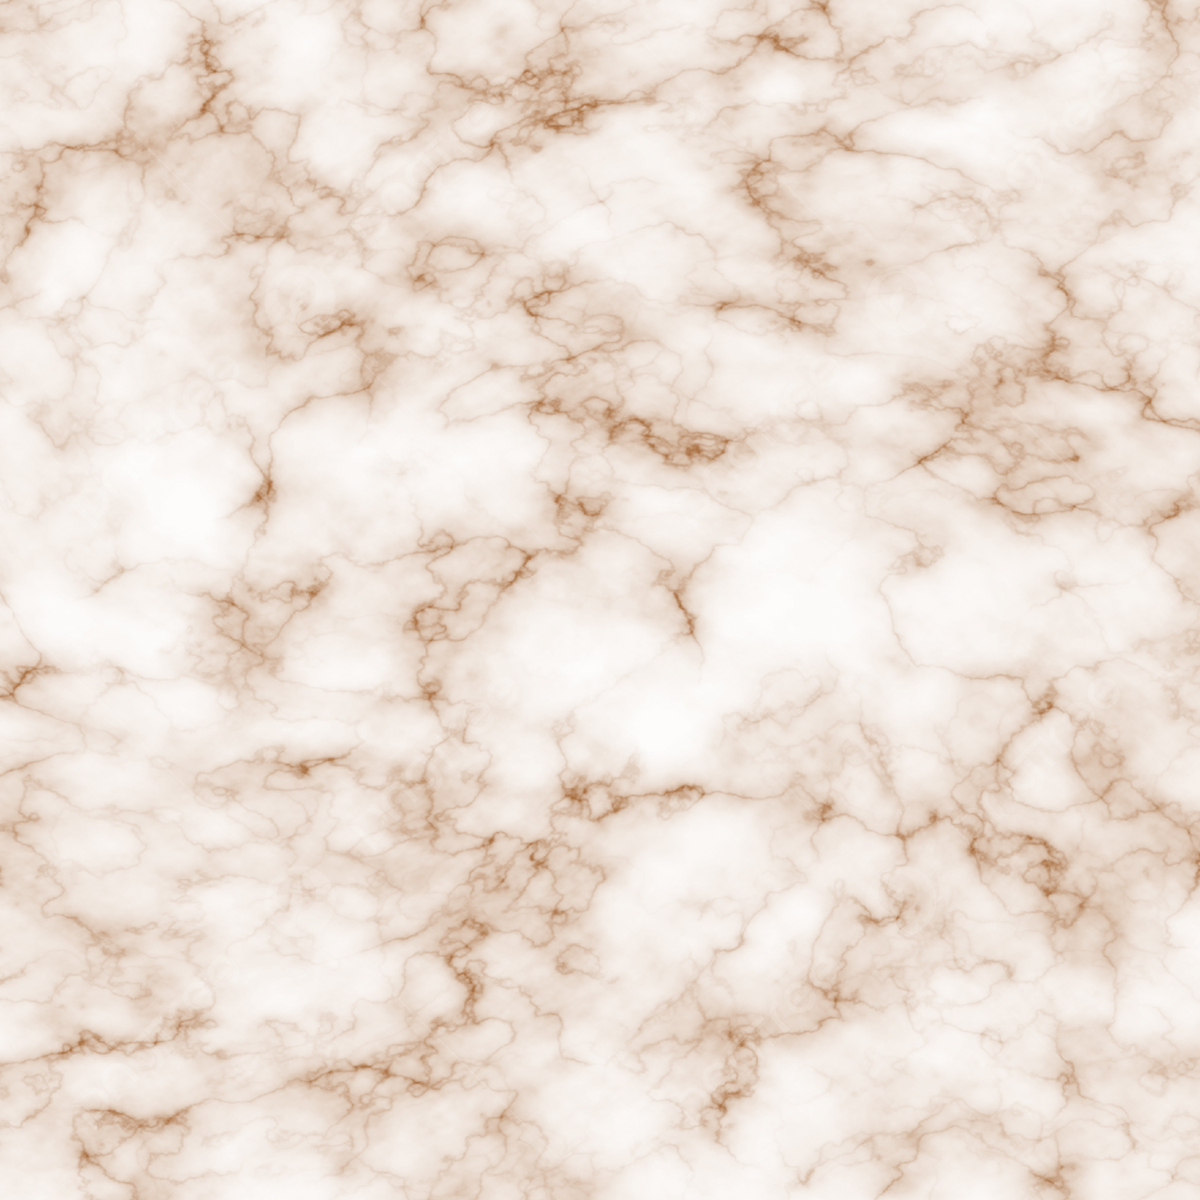  Braune Hintergrundbild 1200x1200. Weiße Braune Natürliche Marmorstruktur Hintergrundbild Hohe Qualität, Marmor Hintergründe, Texturen, Texturen Aus Marmor Hintergrund, Foto und Bild zum kostenlosen Download